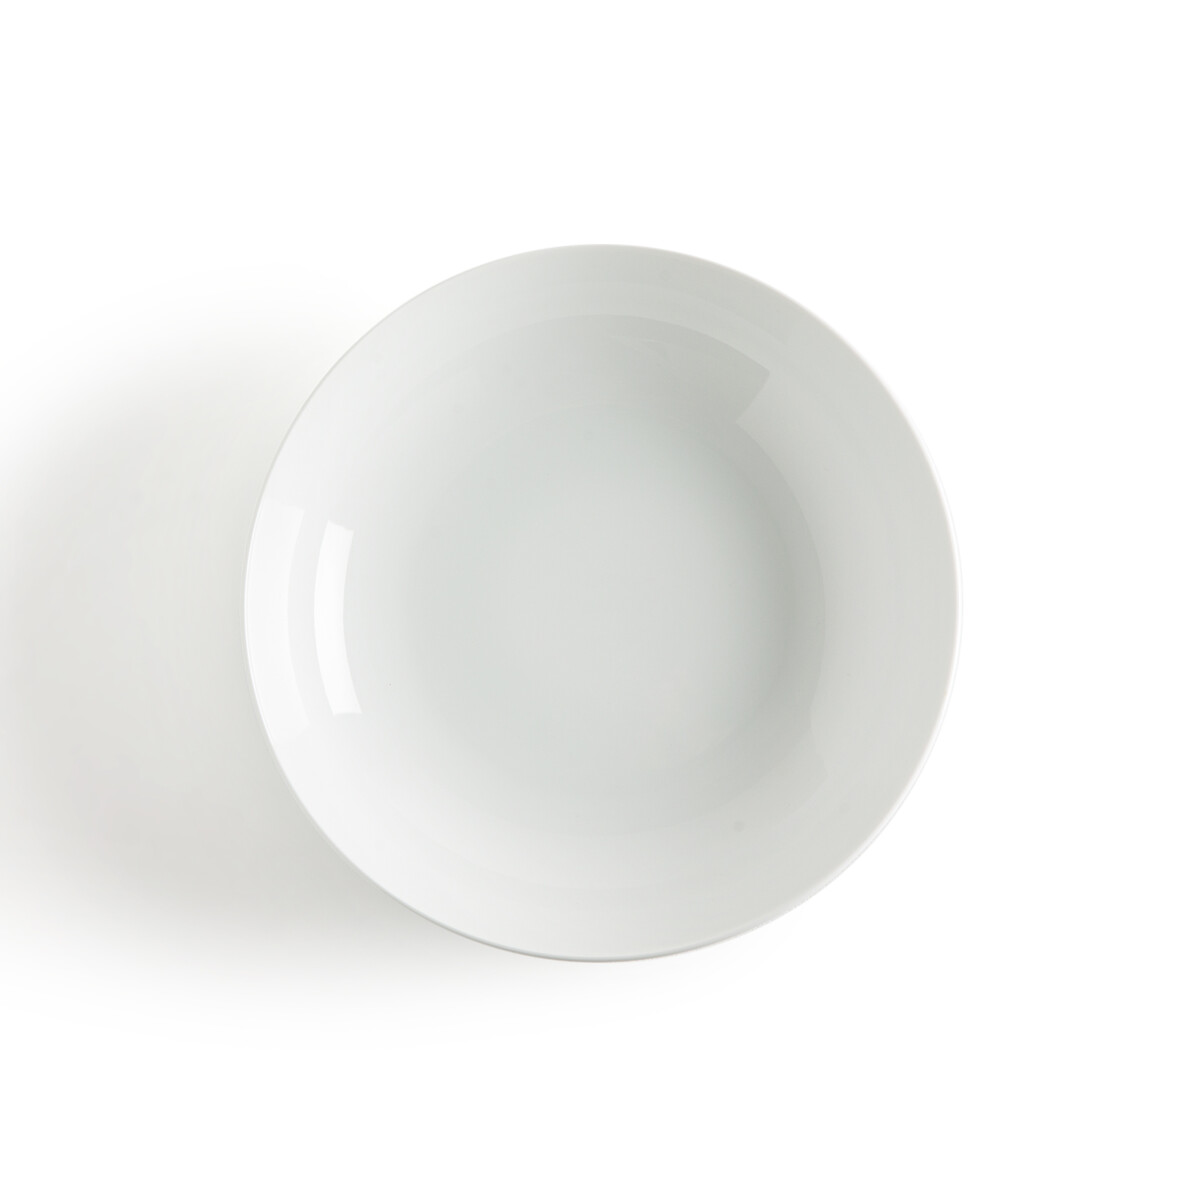 Комплект из 4 глубоких тарелок из фарфора Atola единый размер белый комплект из 4 глубоких тарелок из фарфора atola единый размер белый